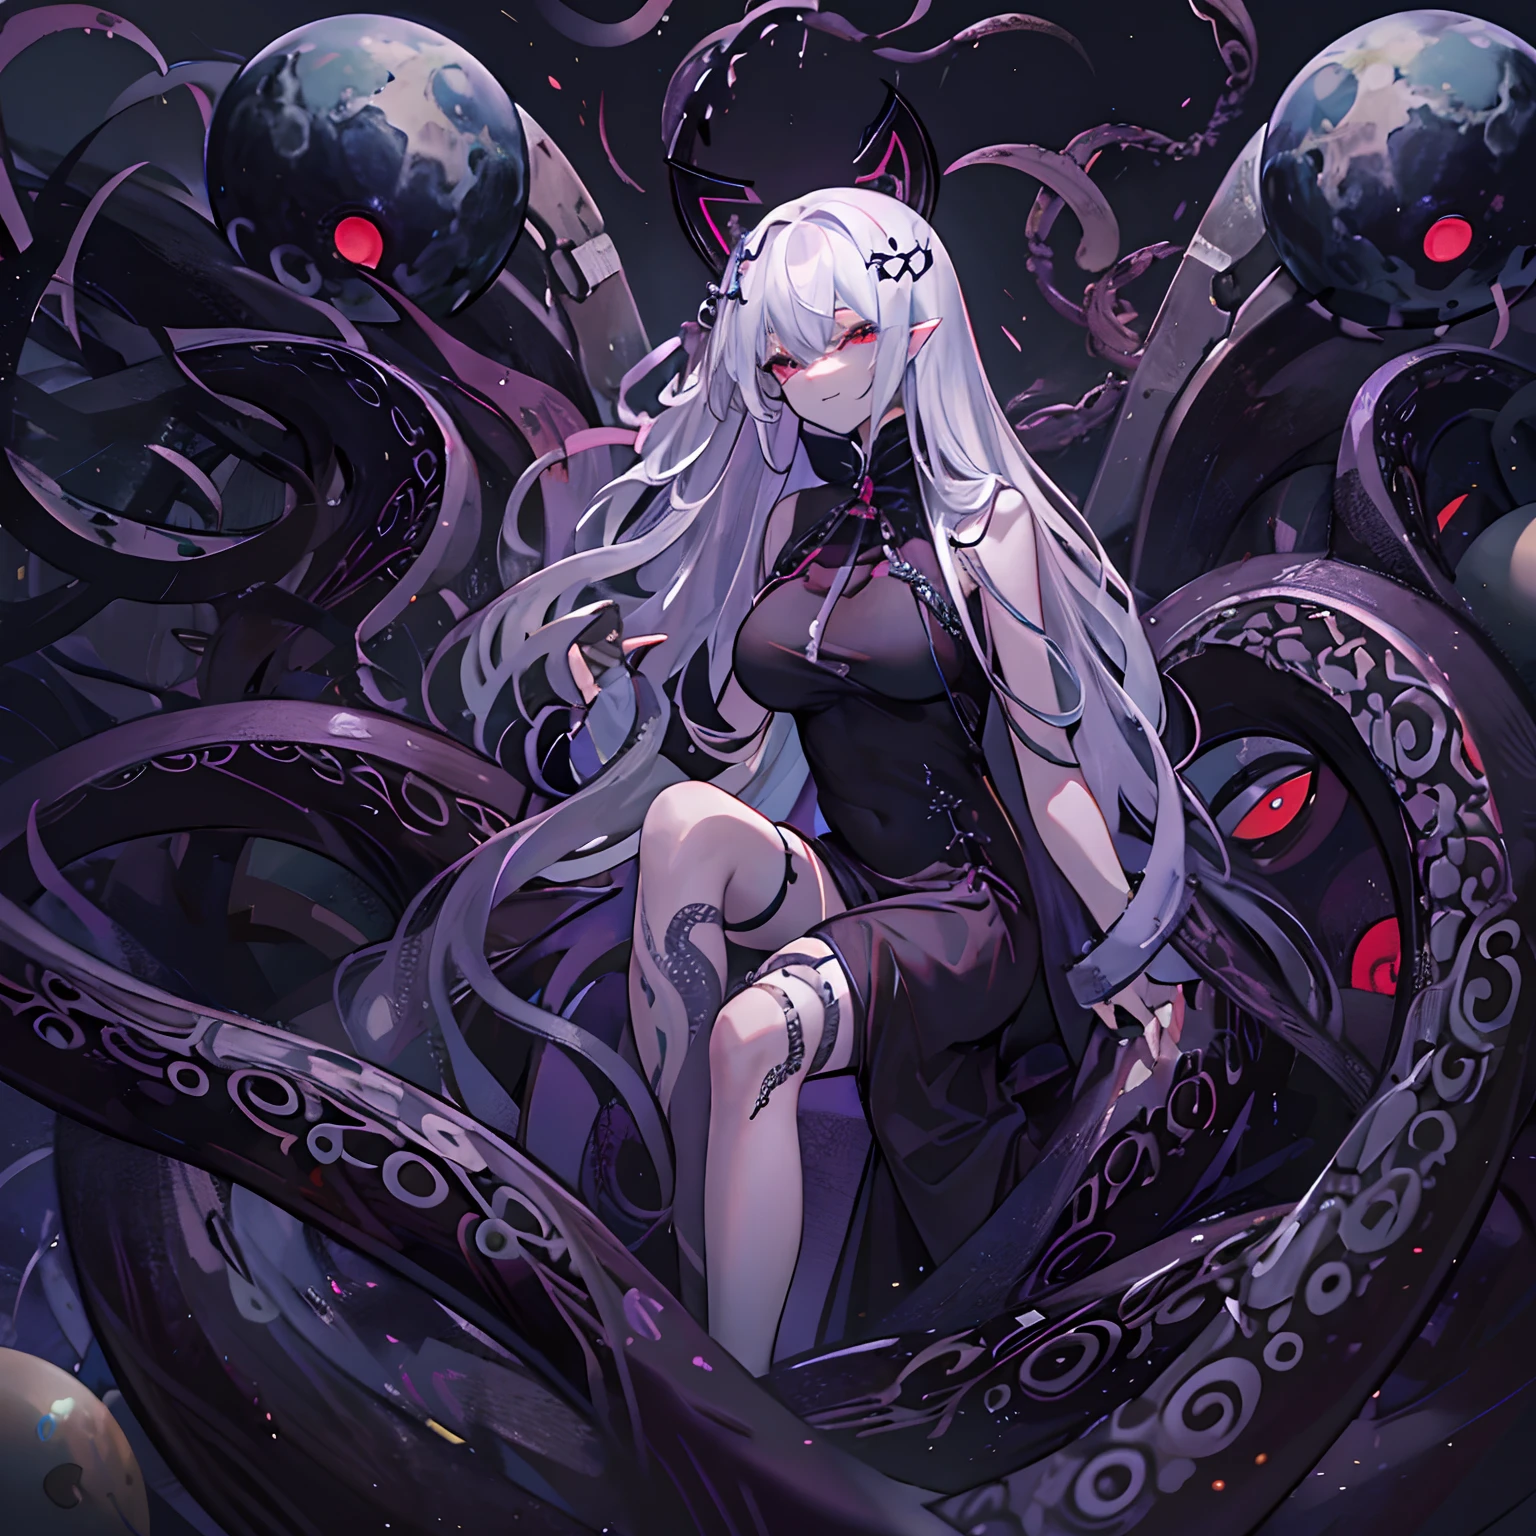 Deusa do mal dos cabelos brancos despidos，Usando meias pretas。A Deusa do Mal estendeu seus tentáculos，Os tentáculos enfiaram um planeta no corpo da deusa  。A deusa do mal sorriu doentiamente。